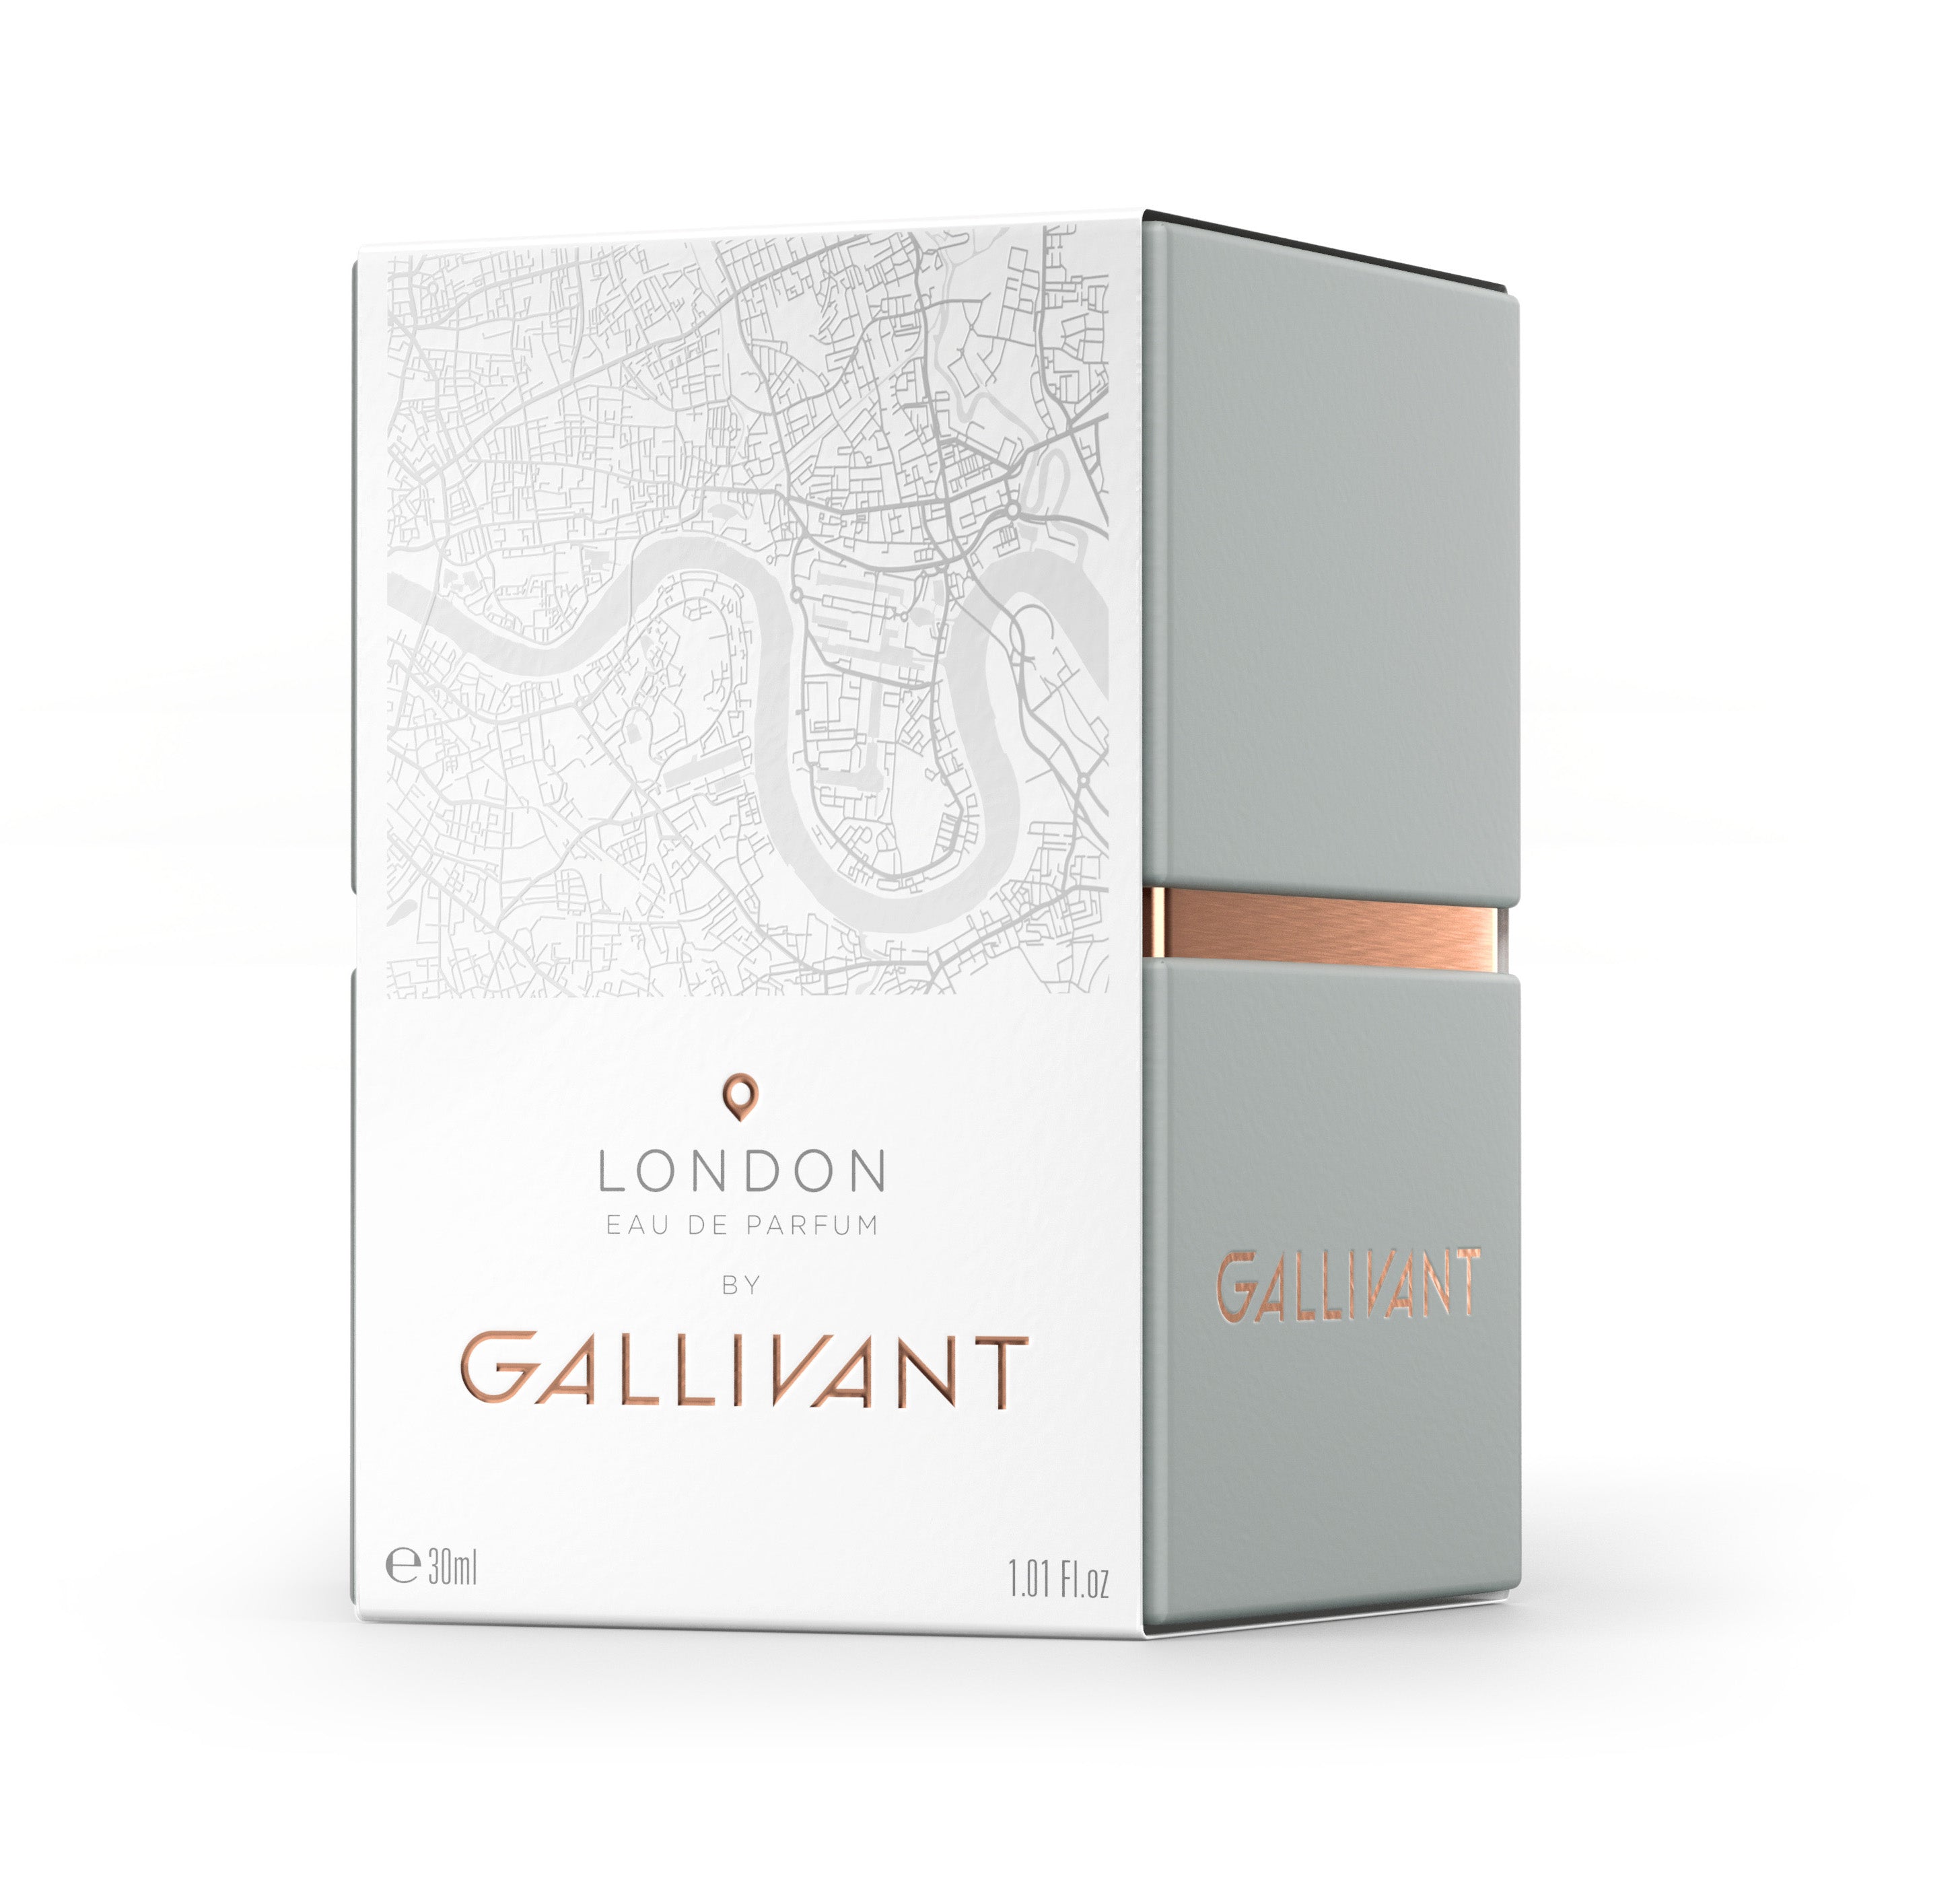 London Eau de Parfum 30ml Box by Gallivant 